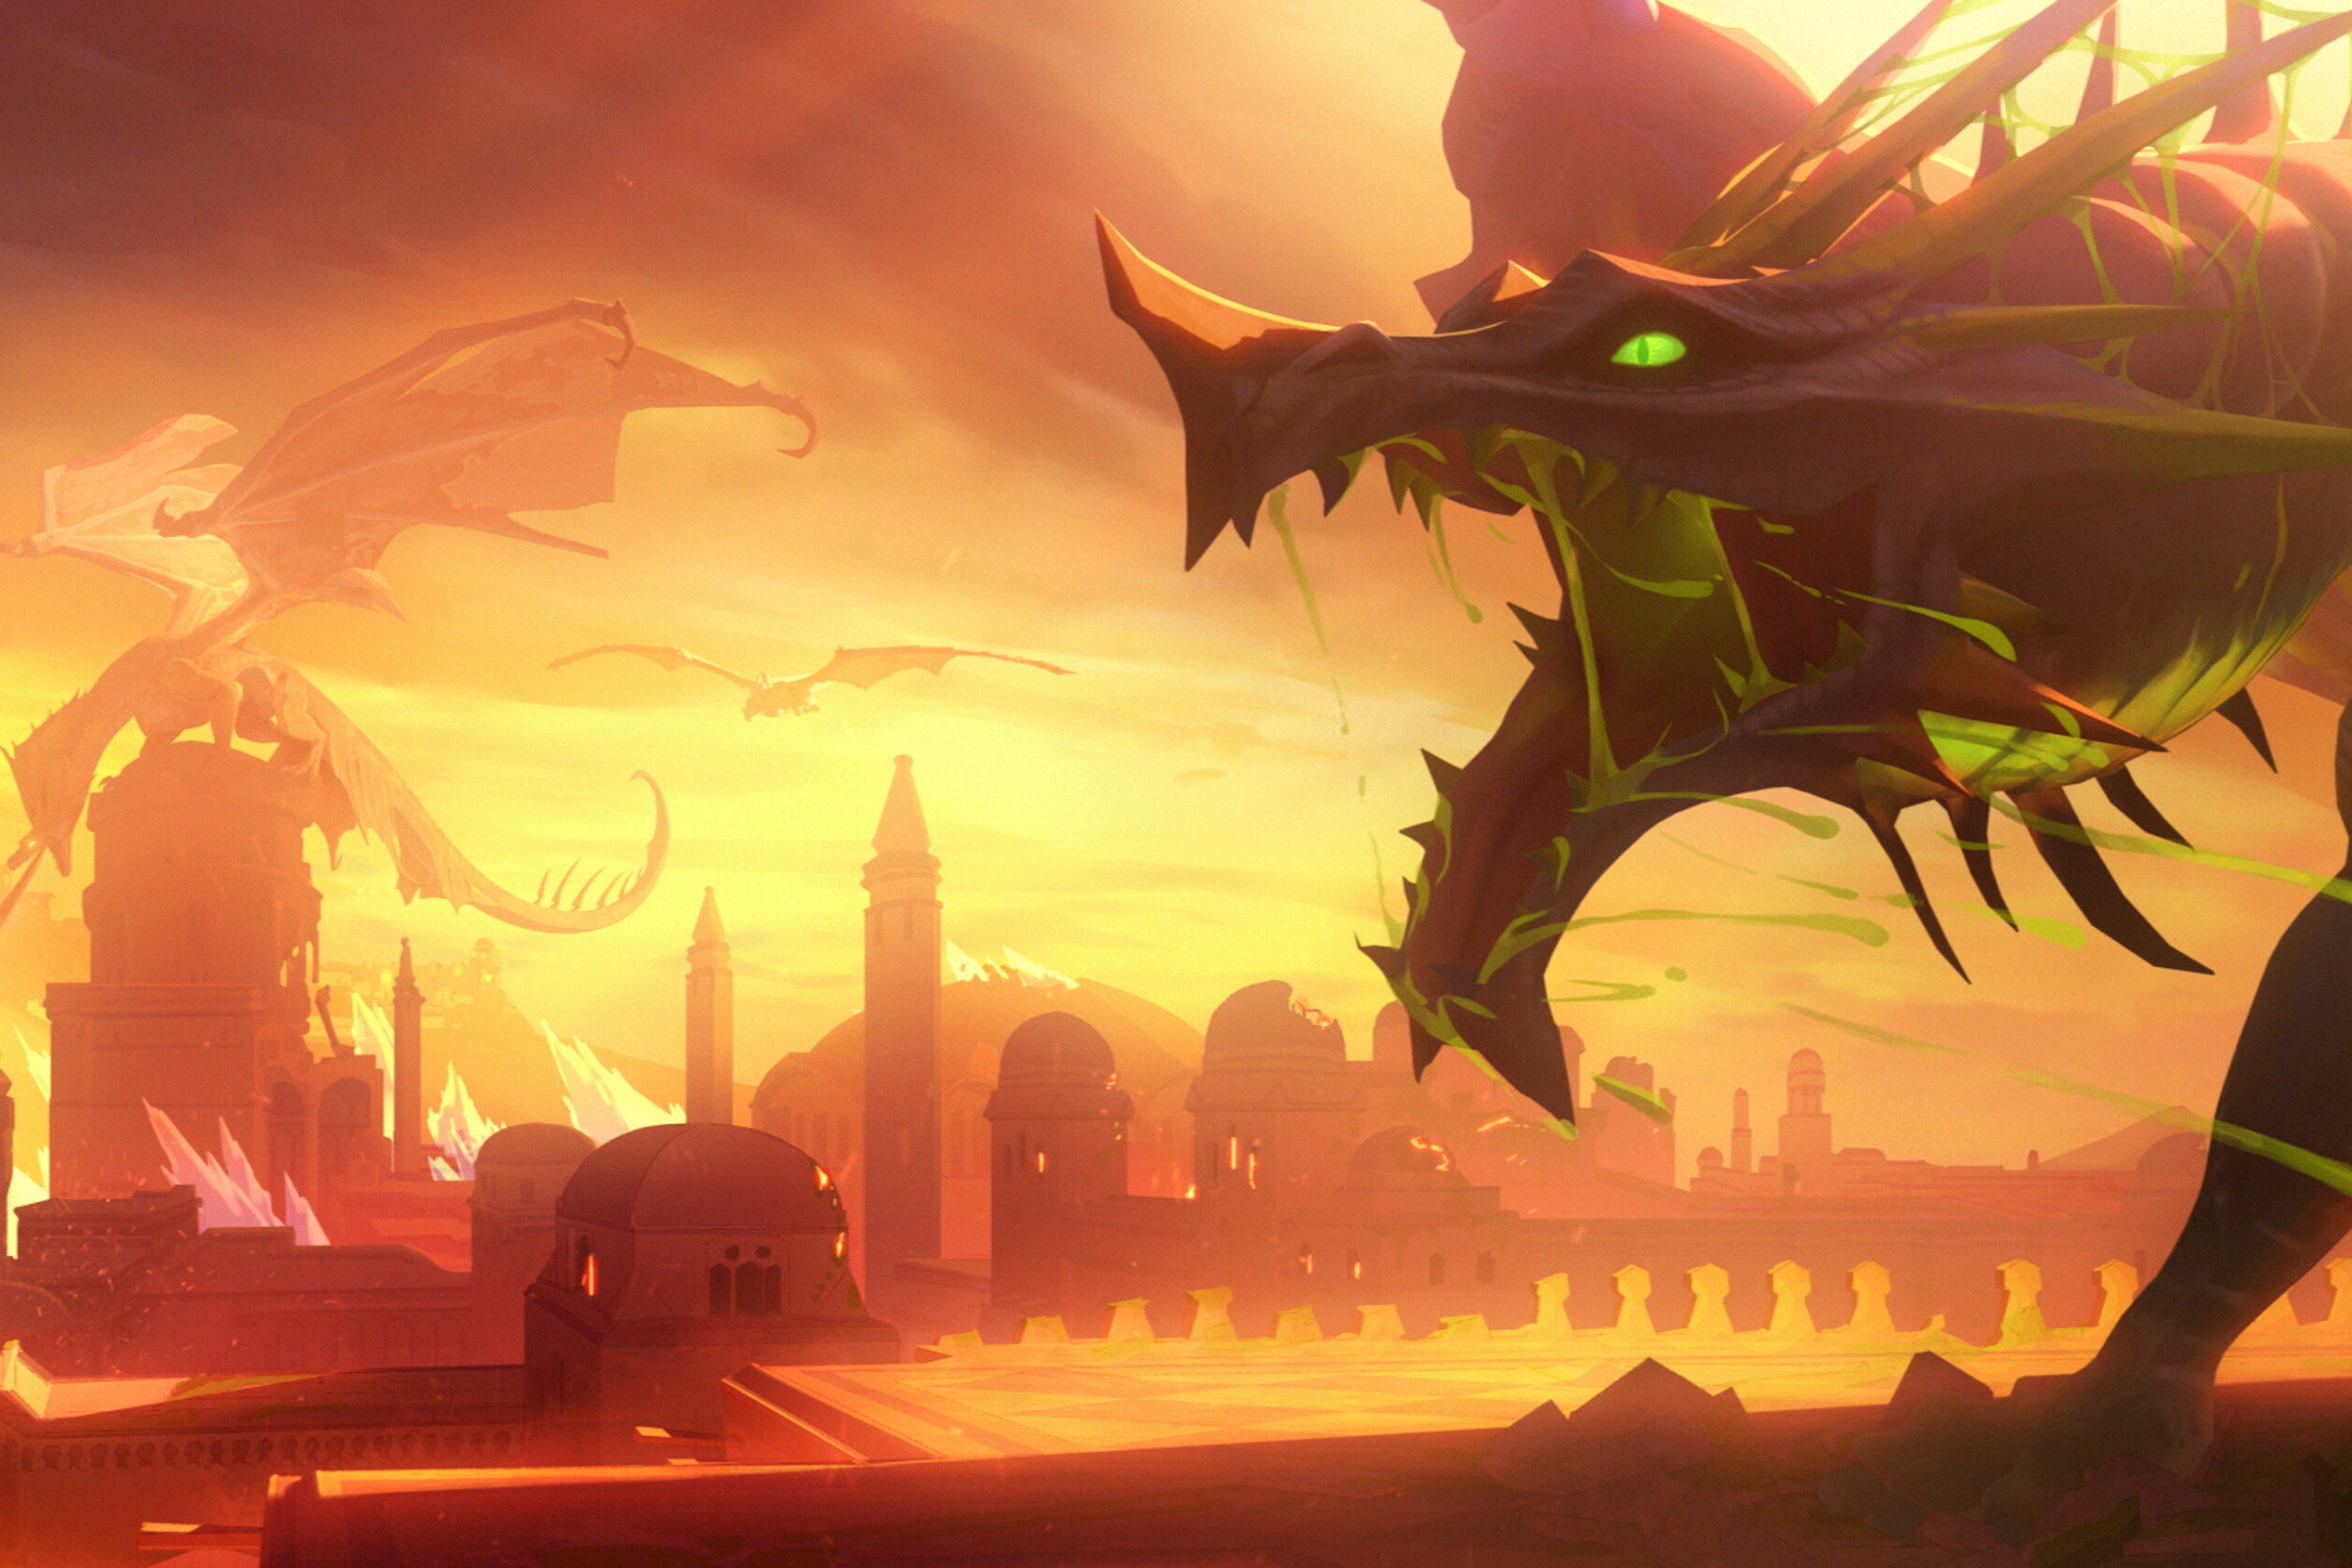 Umbrasyl ruge sobre uma cidade em chamas na segunda temporada de The Legend of Vox Machina.